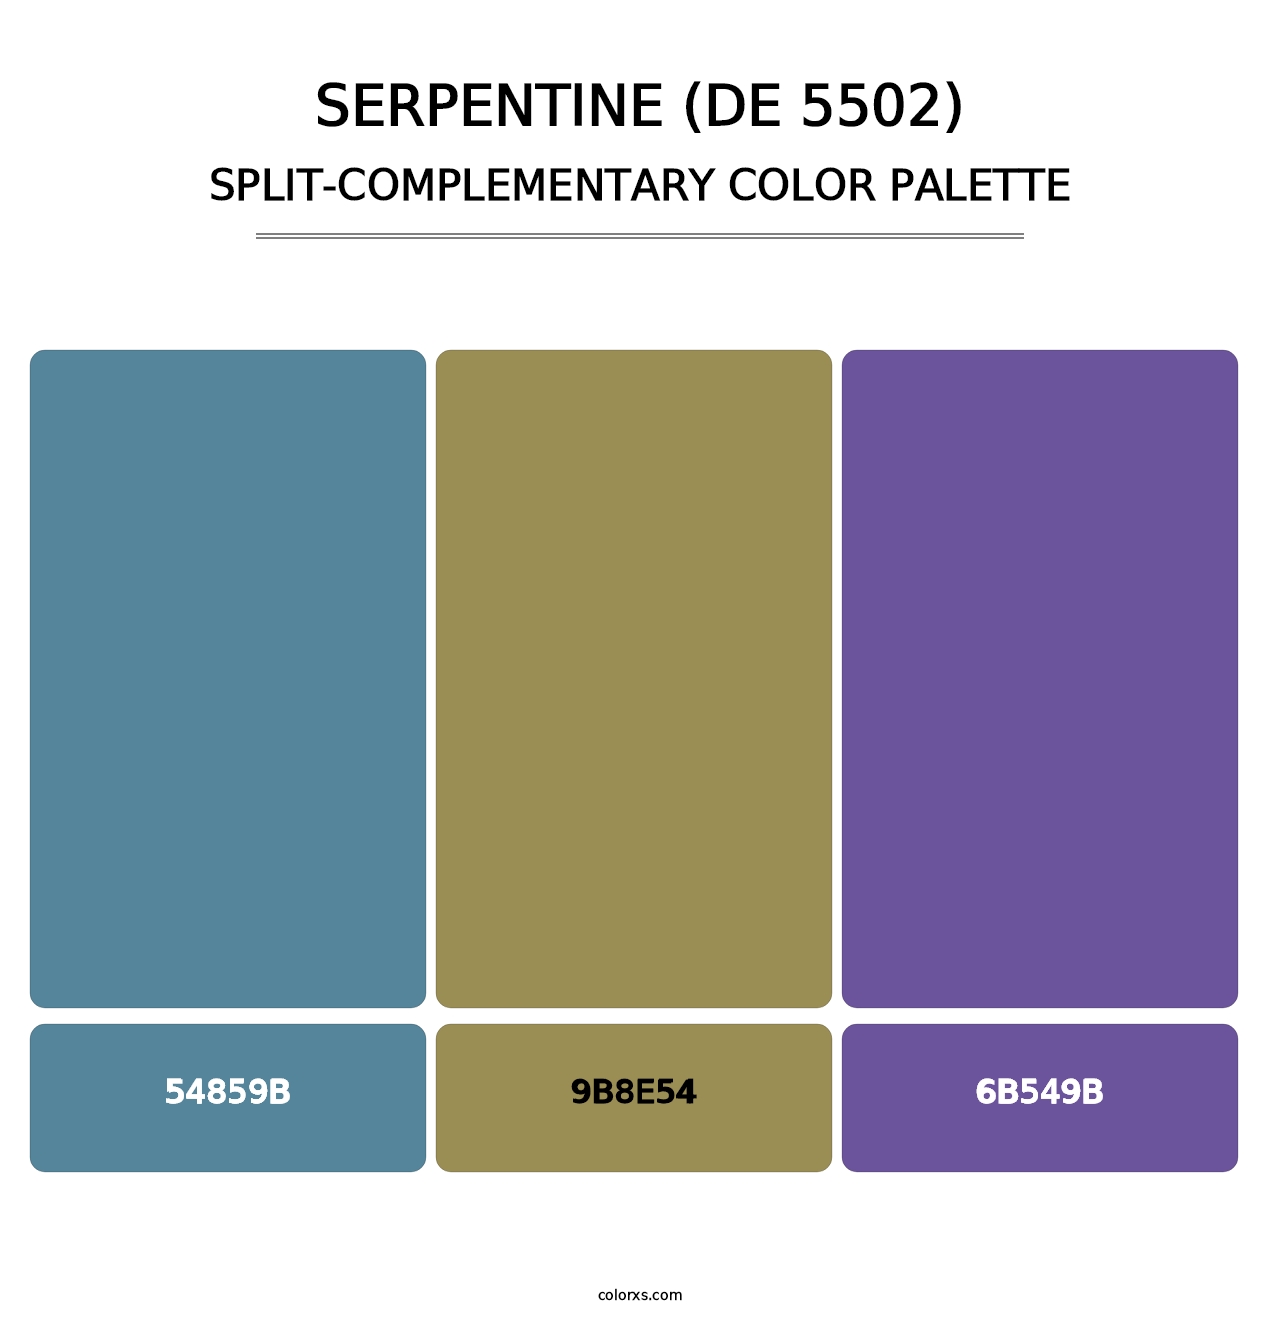 Serpentine (DE 5502) - Split-Complementary Color Palette